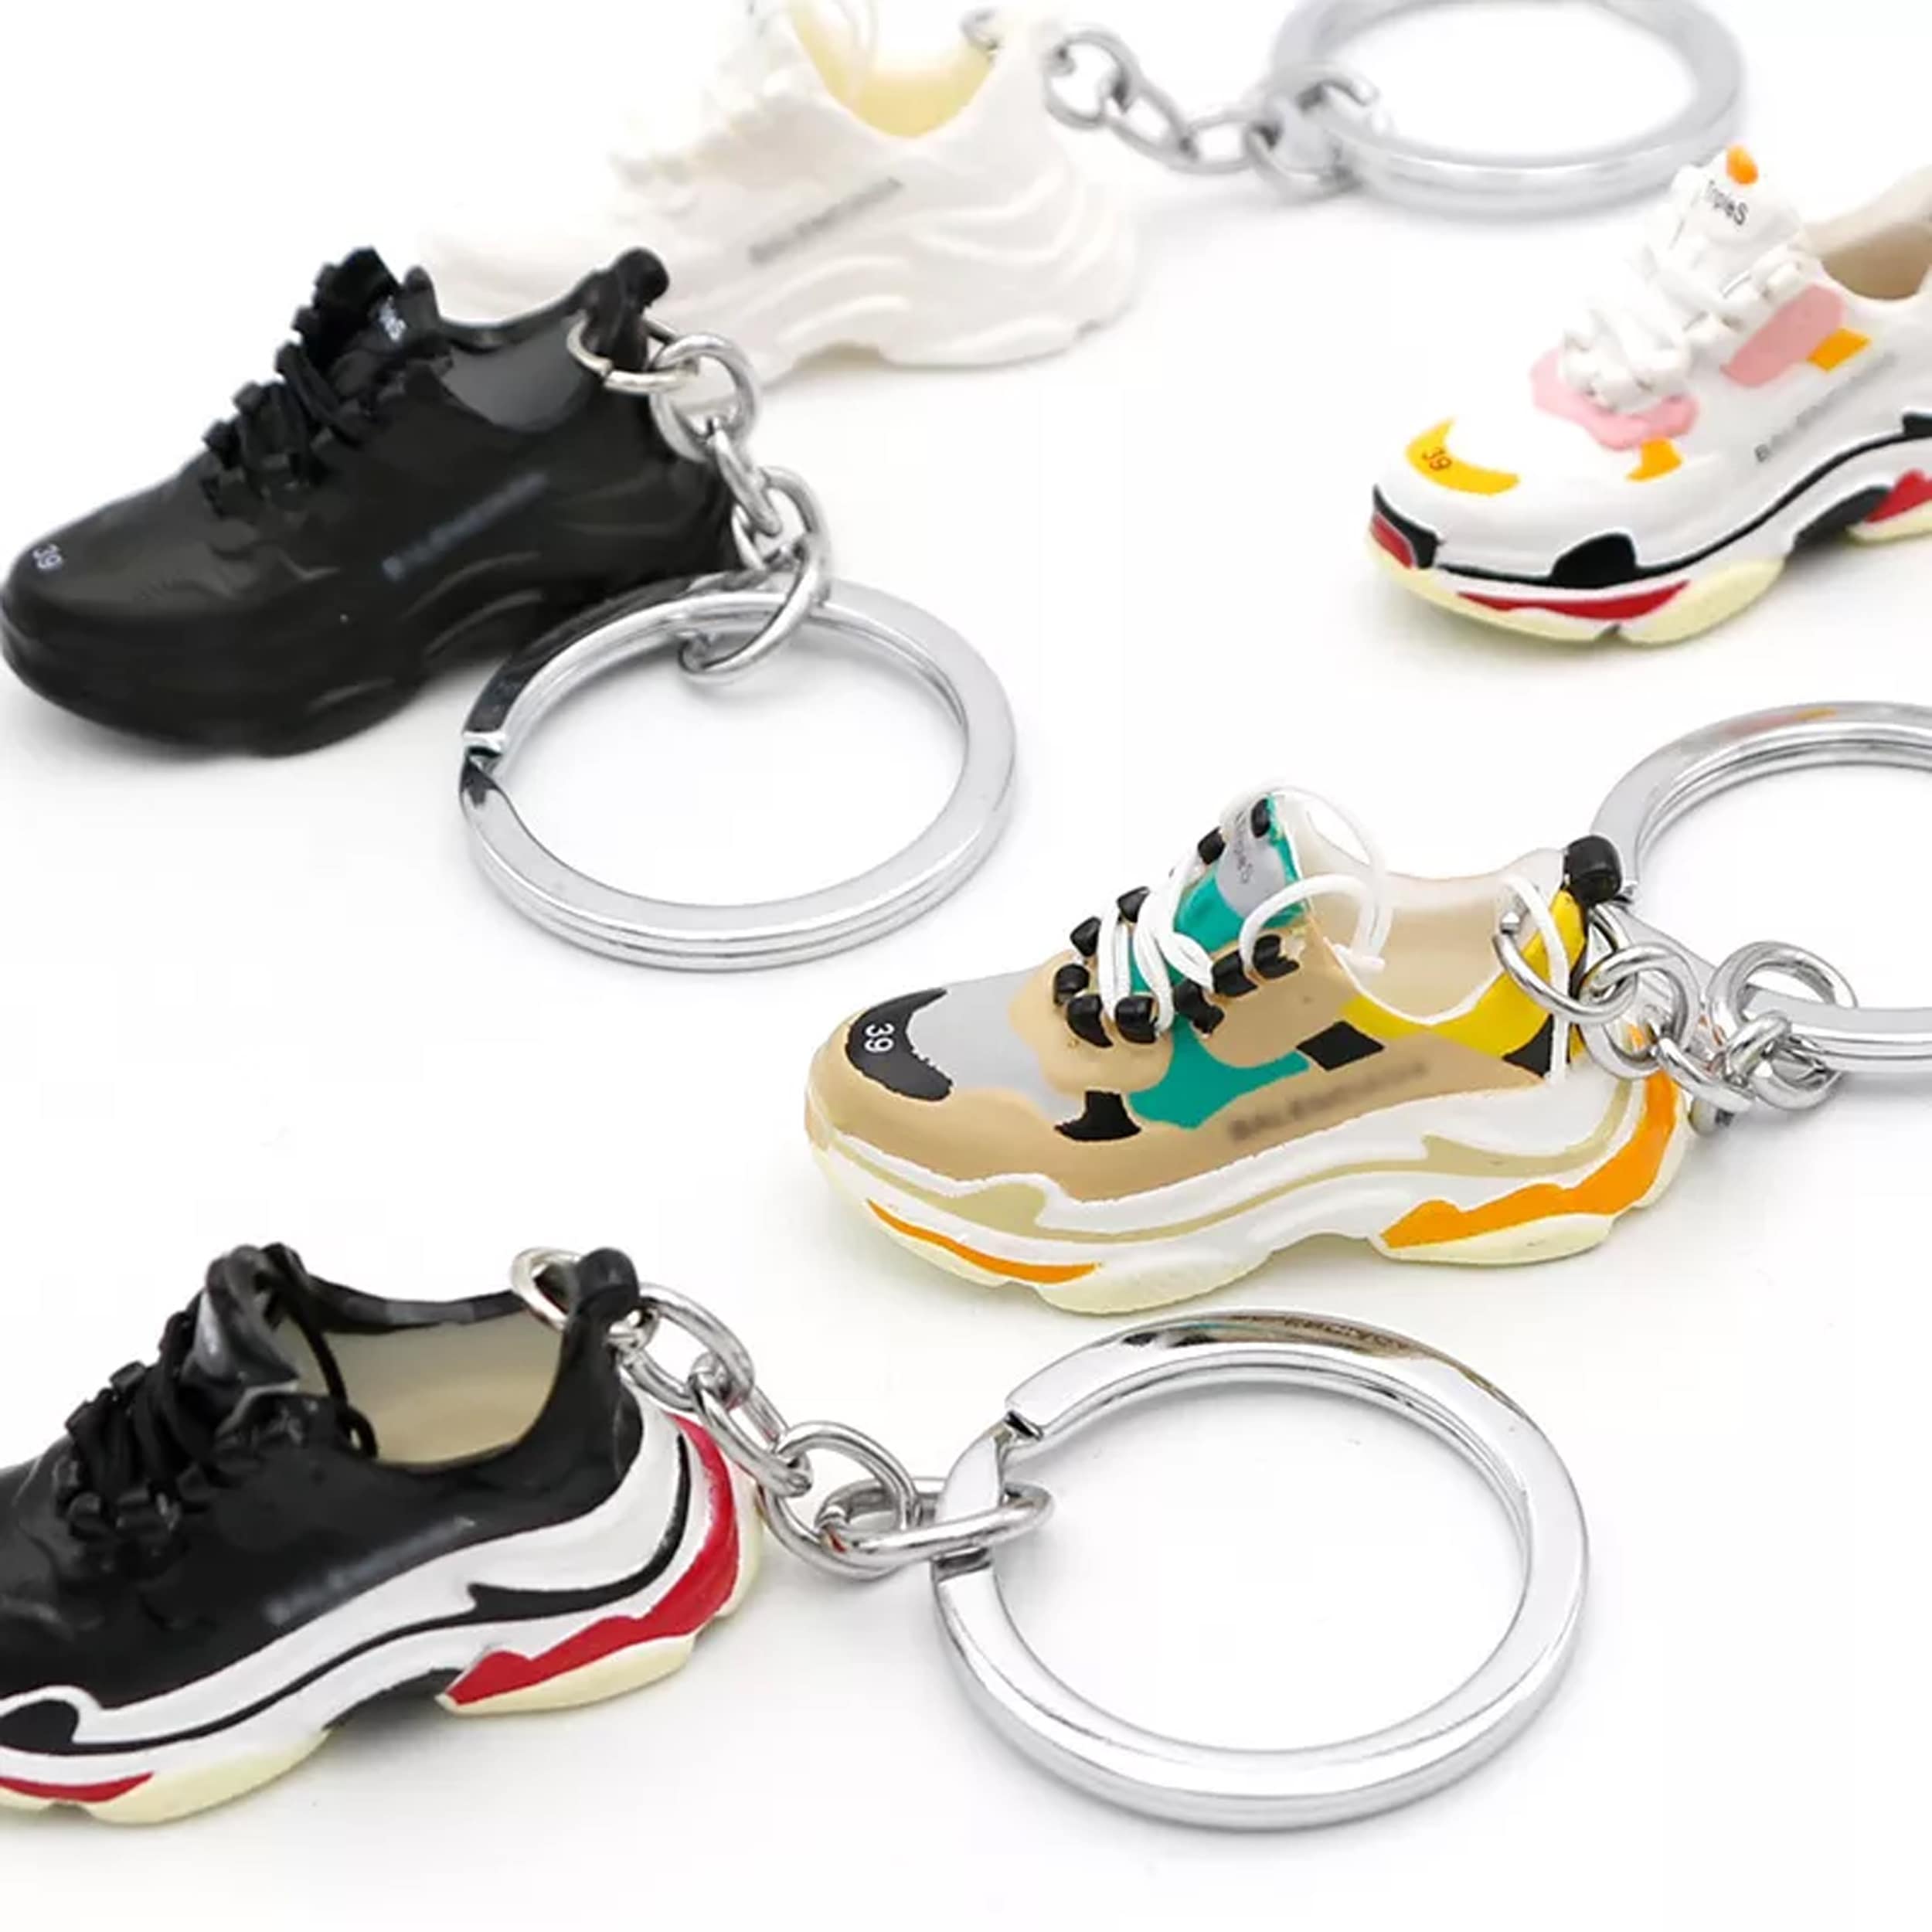 Buy Shoes Shaped Keychains Online at JSBlueRidge Wholesale